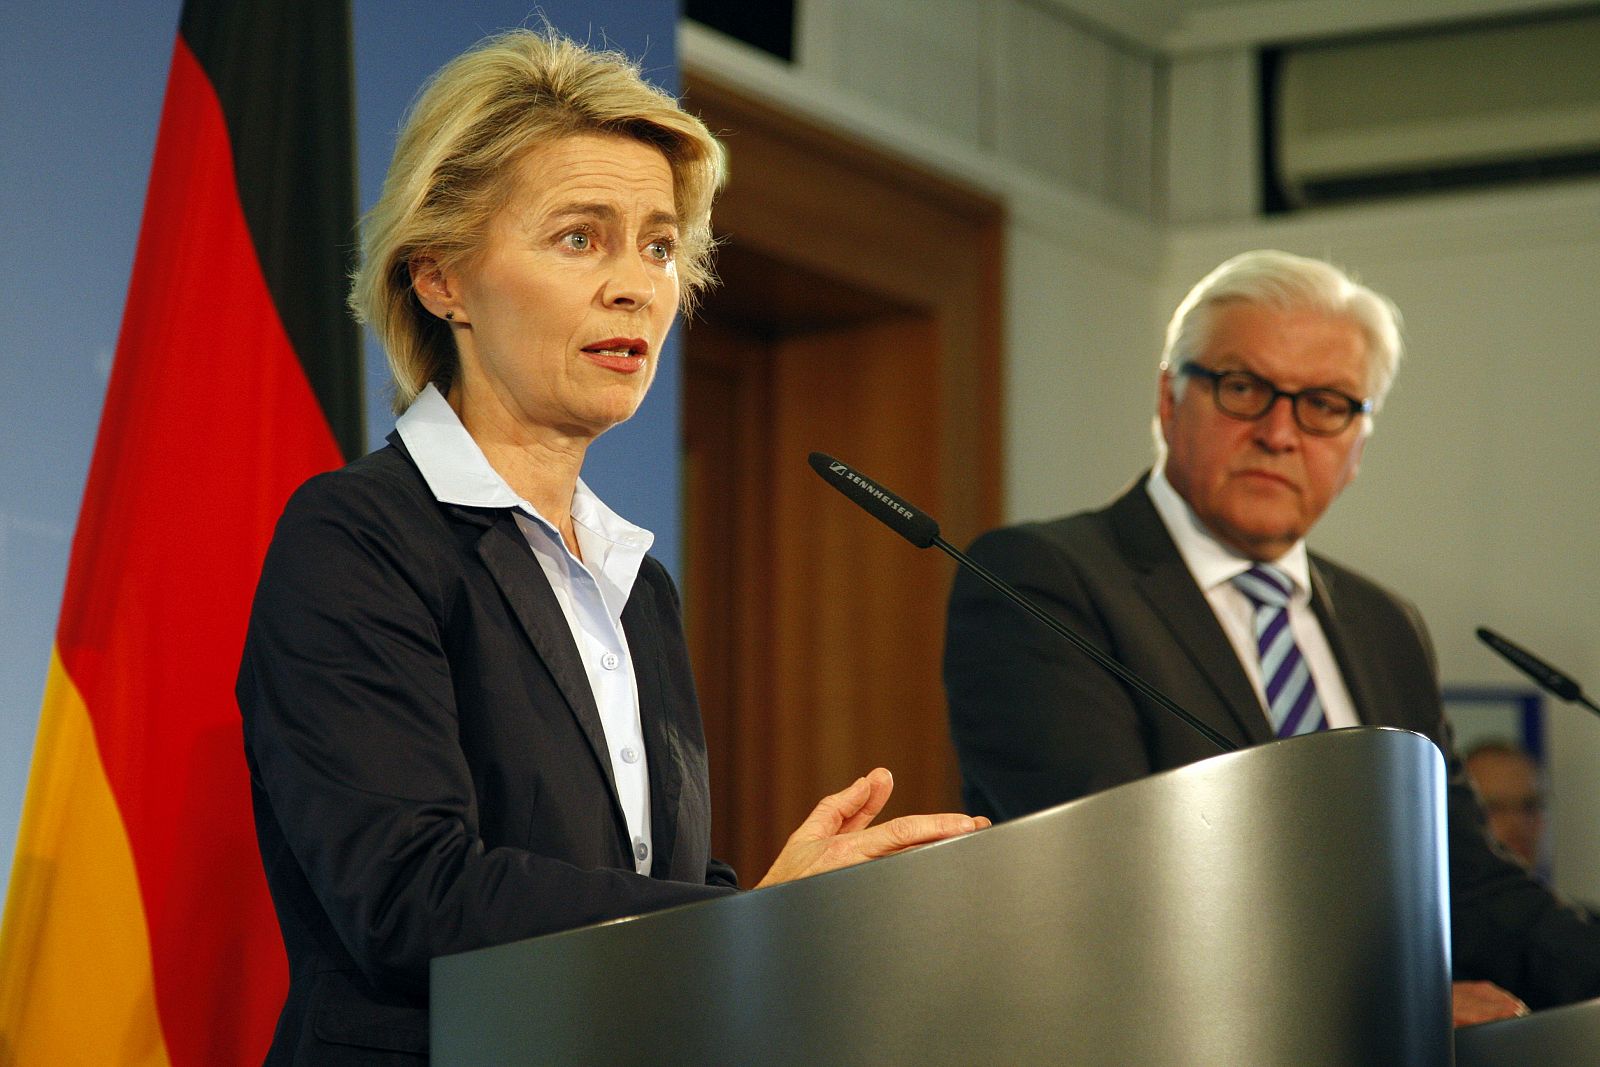 La Ministra alemana de Defensa Ursula von der Leyen y el Ministro de Exteriores Frank-Walter Steinmeier durante la rueda de prensa